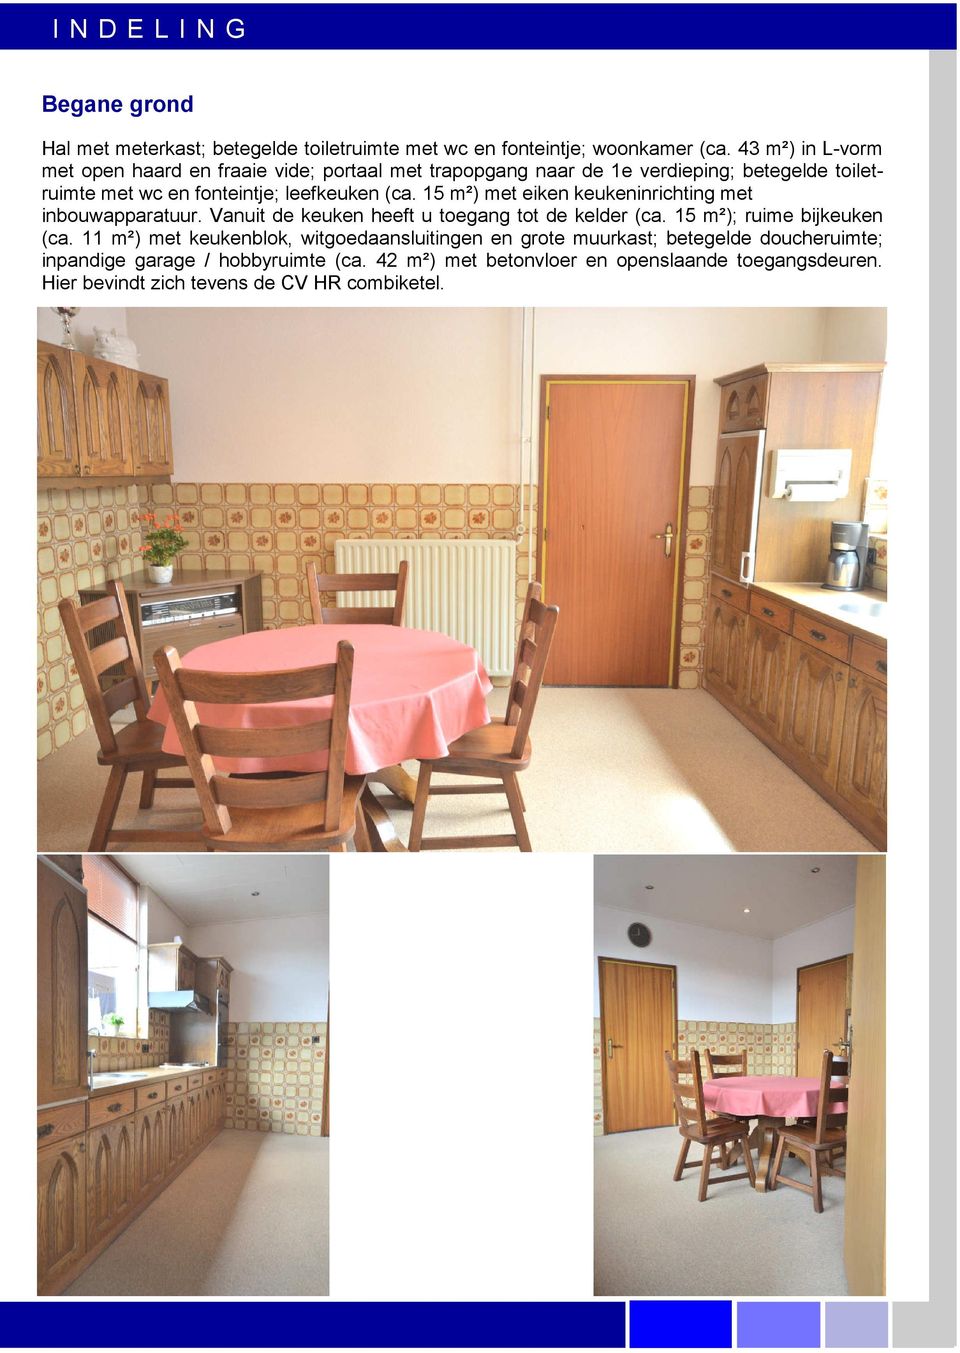 15 m²) met eiken keukeninrichting met inbouwapparatuur. Vanuit de keuken heeft u toegang tot de kelder (ca. 15 m²); ruime bijkeuken (ca.